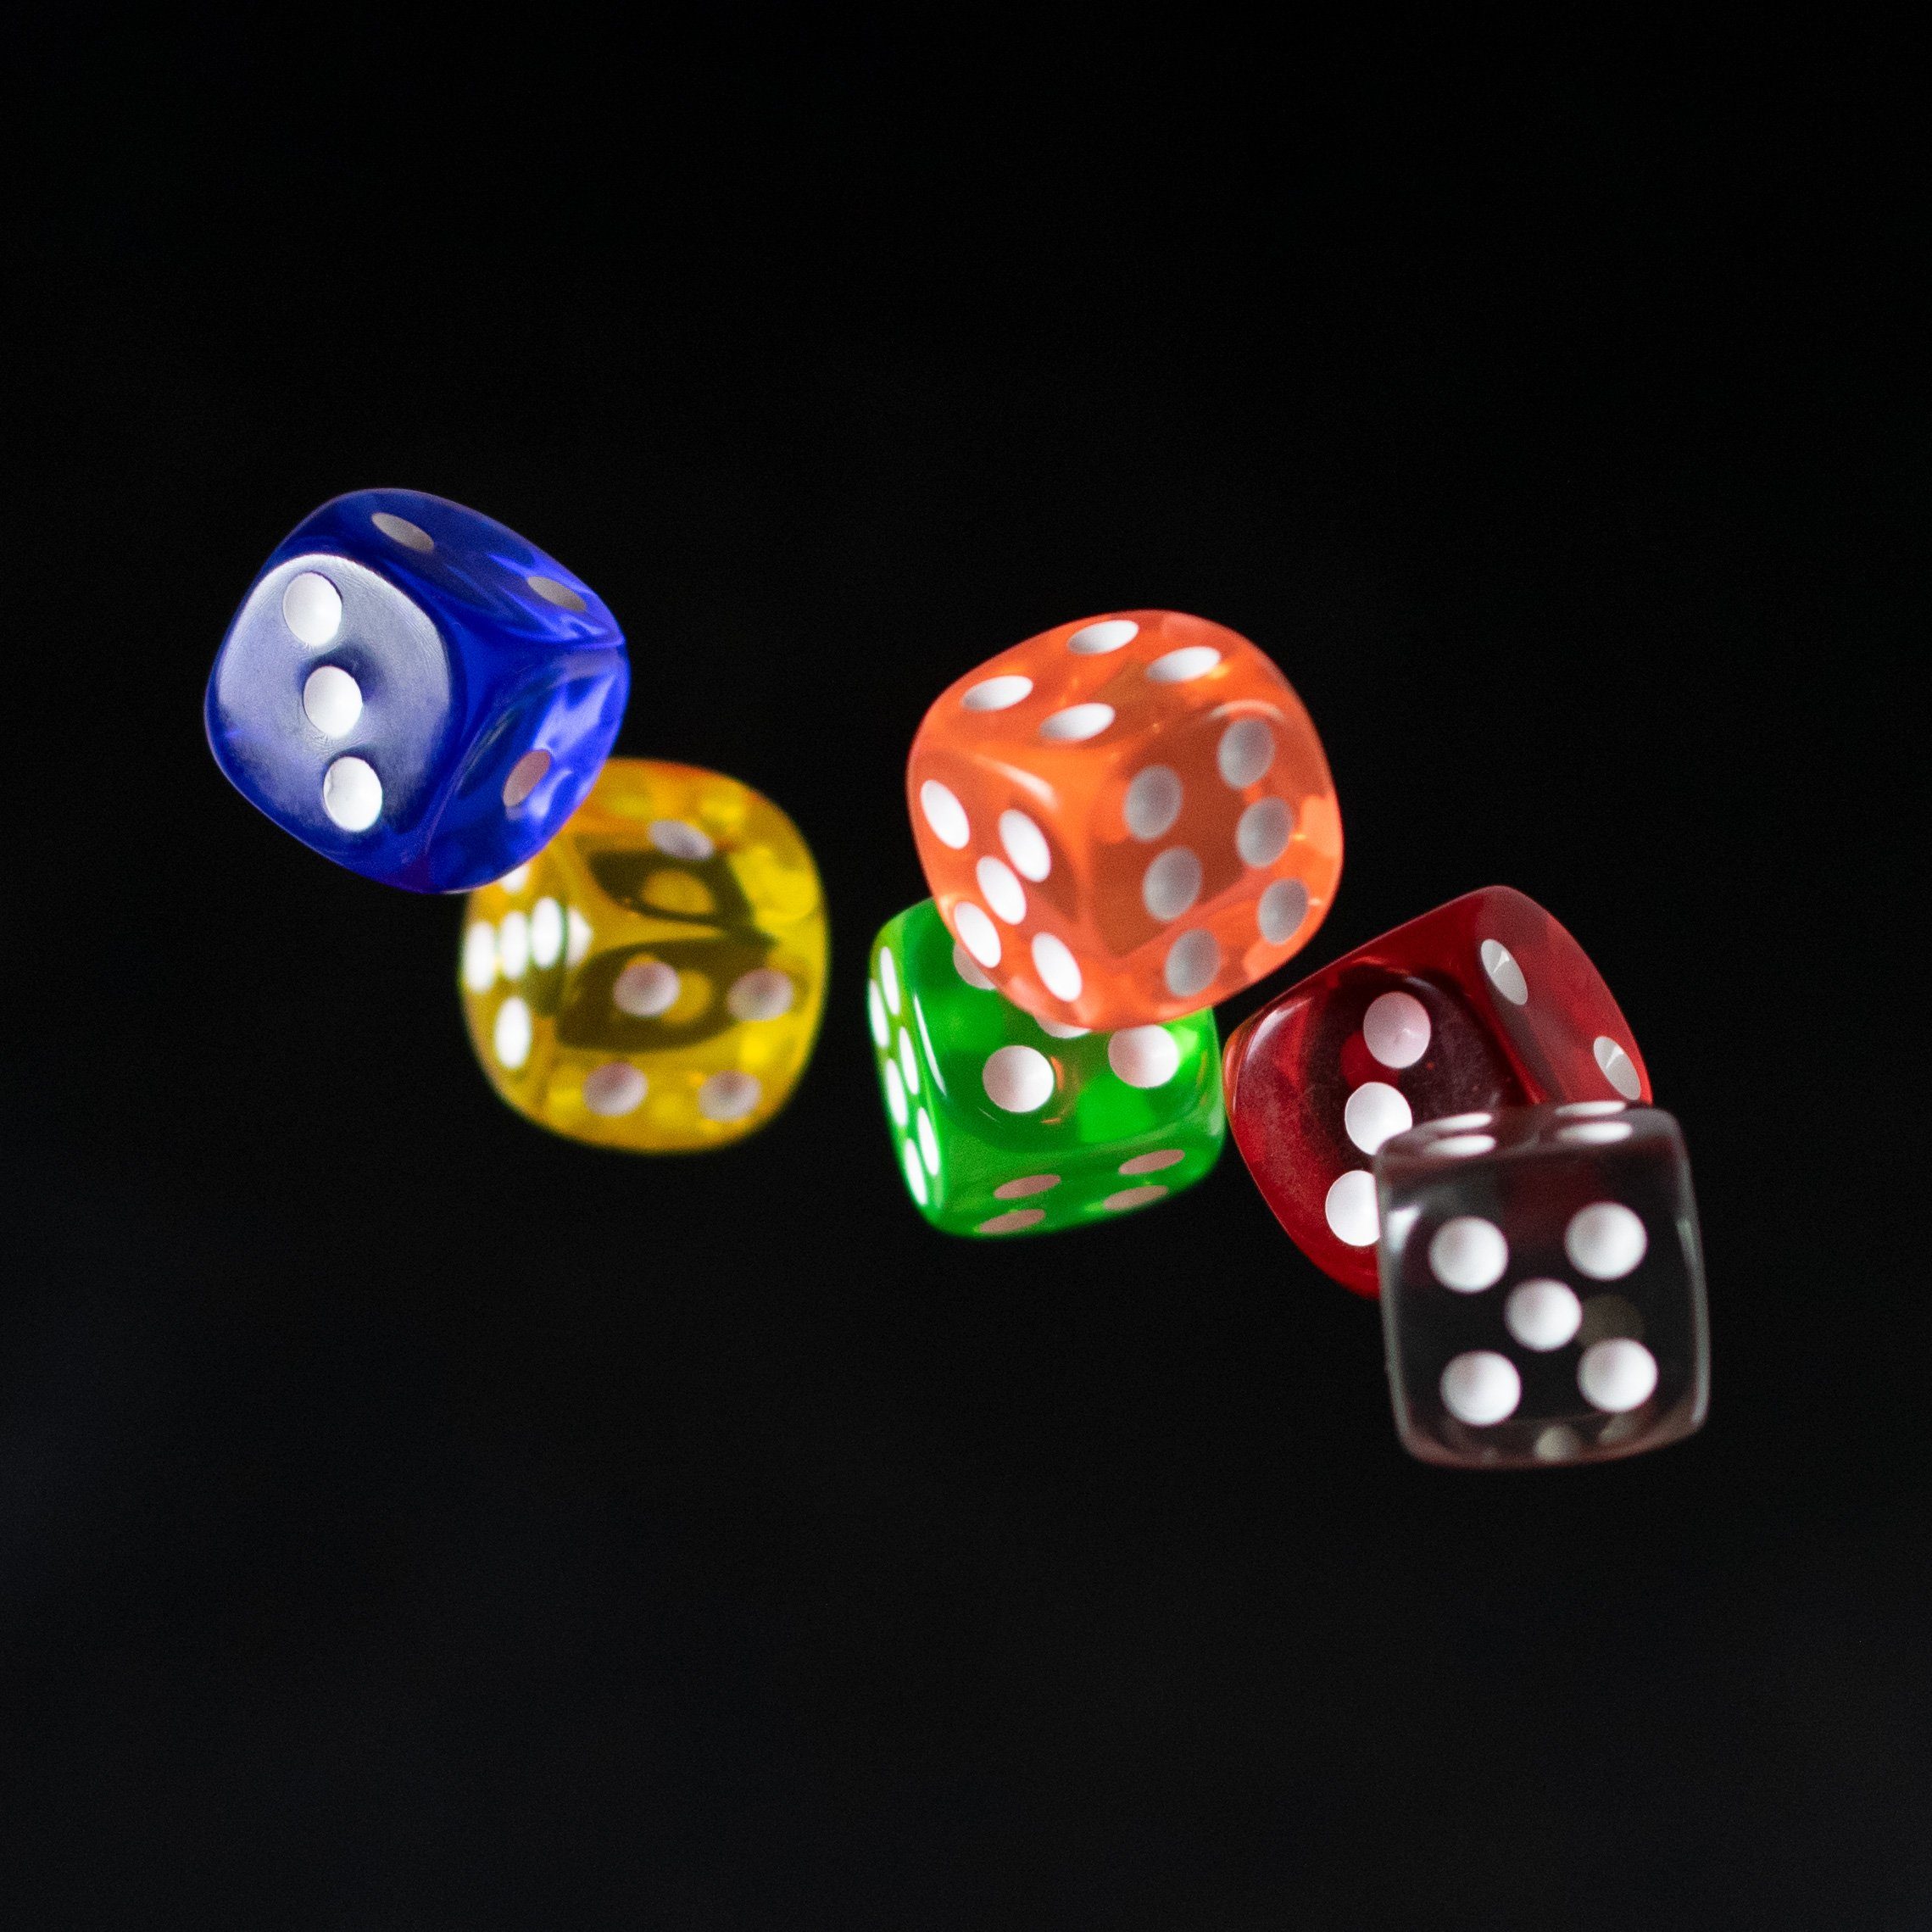 und W6 Tabletopspiele - Rollen Blau Brett Spielwürfel für Spielesammlung, SHIBBY Würfel